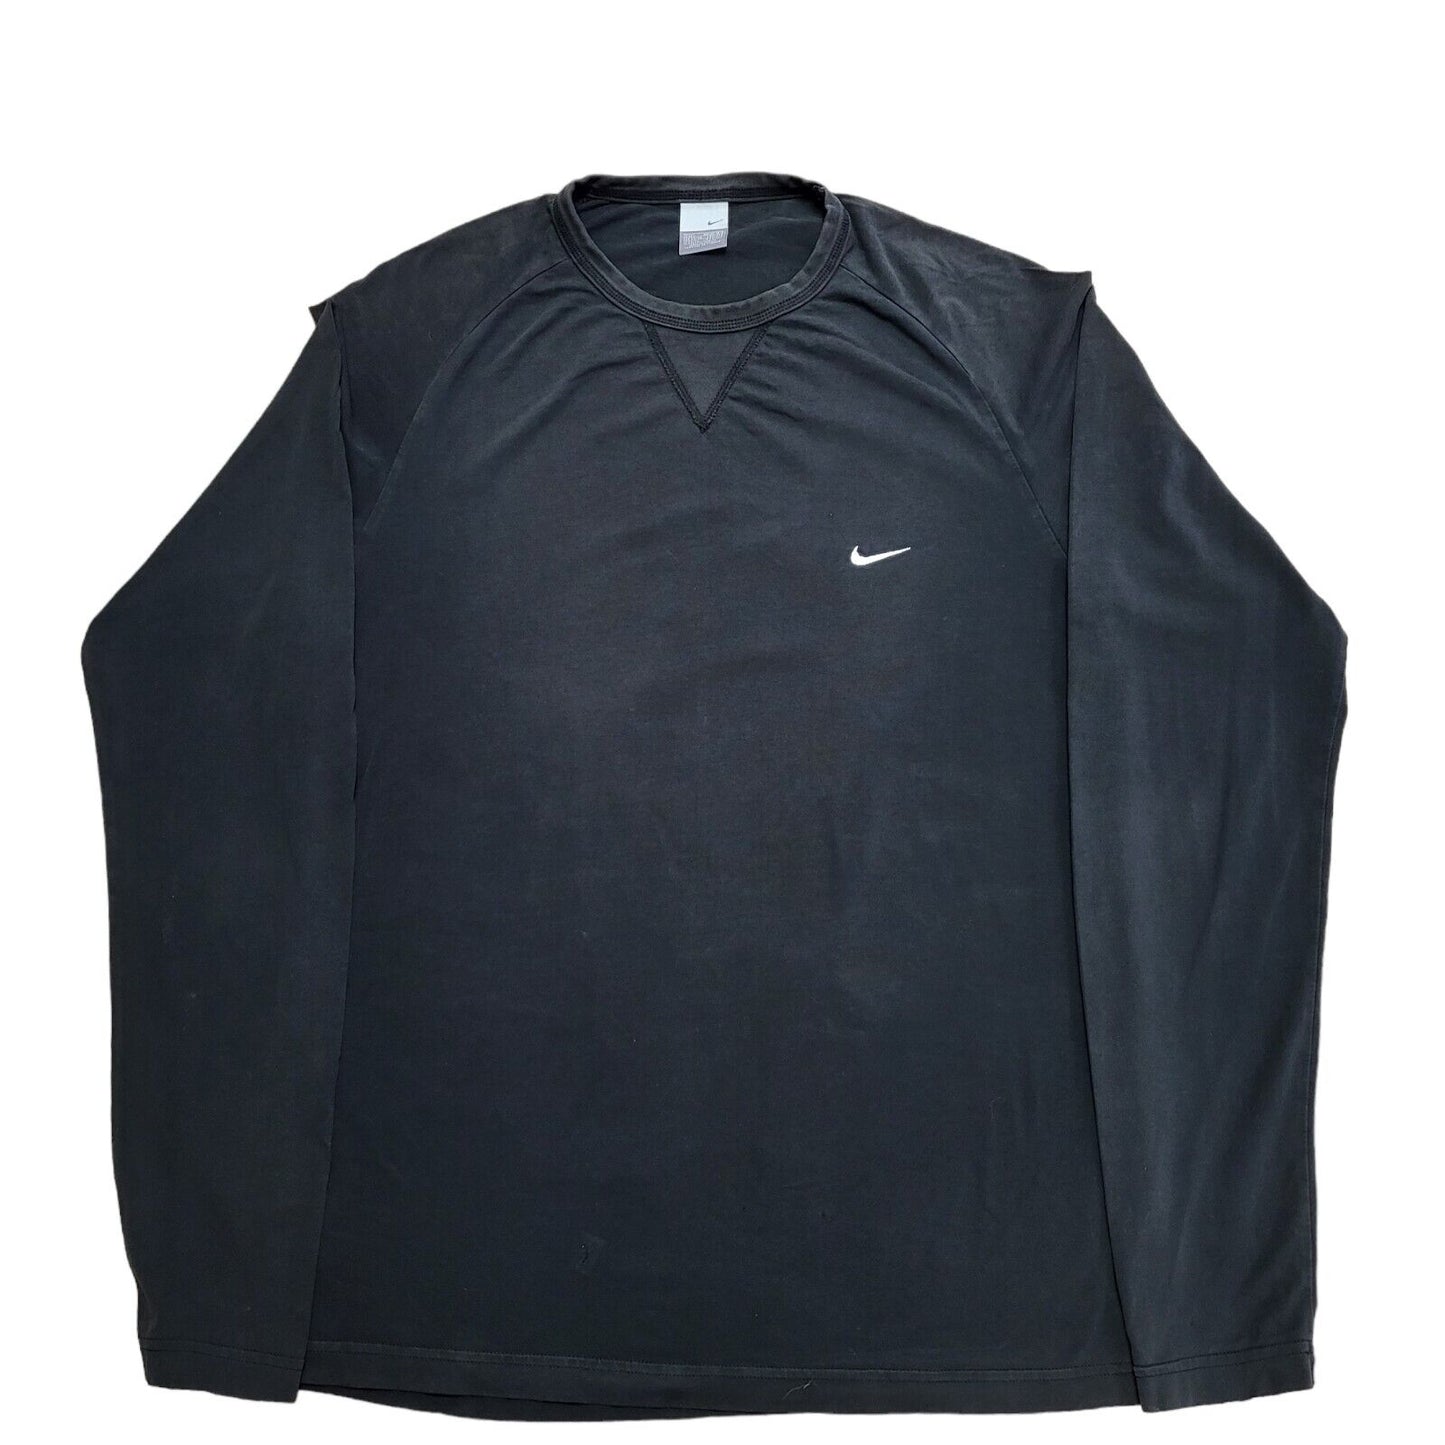 Nike T-Shirt (L)